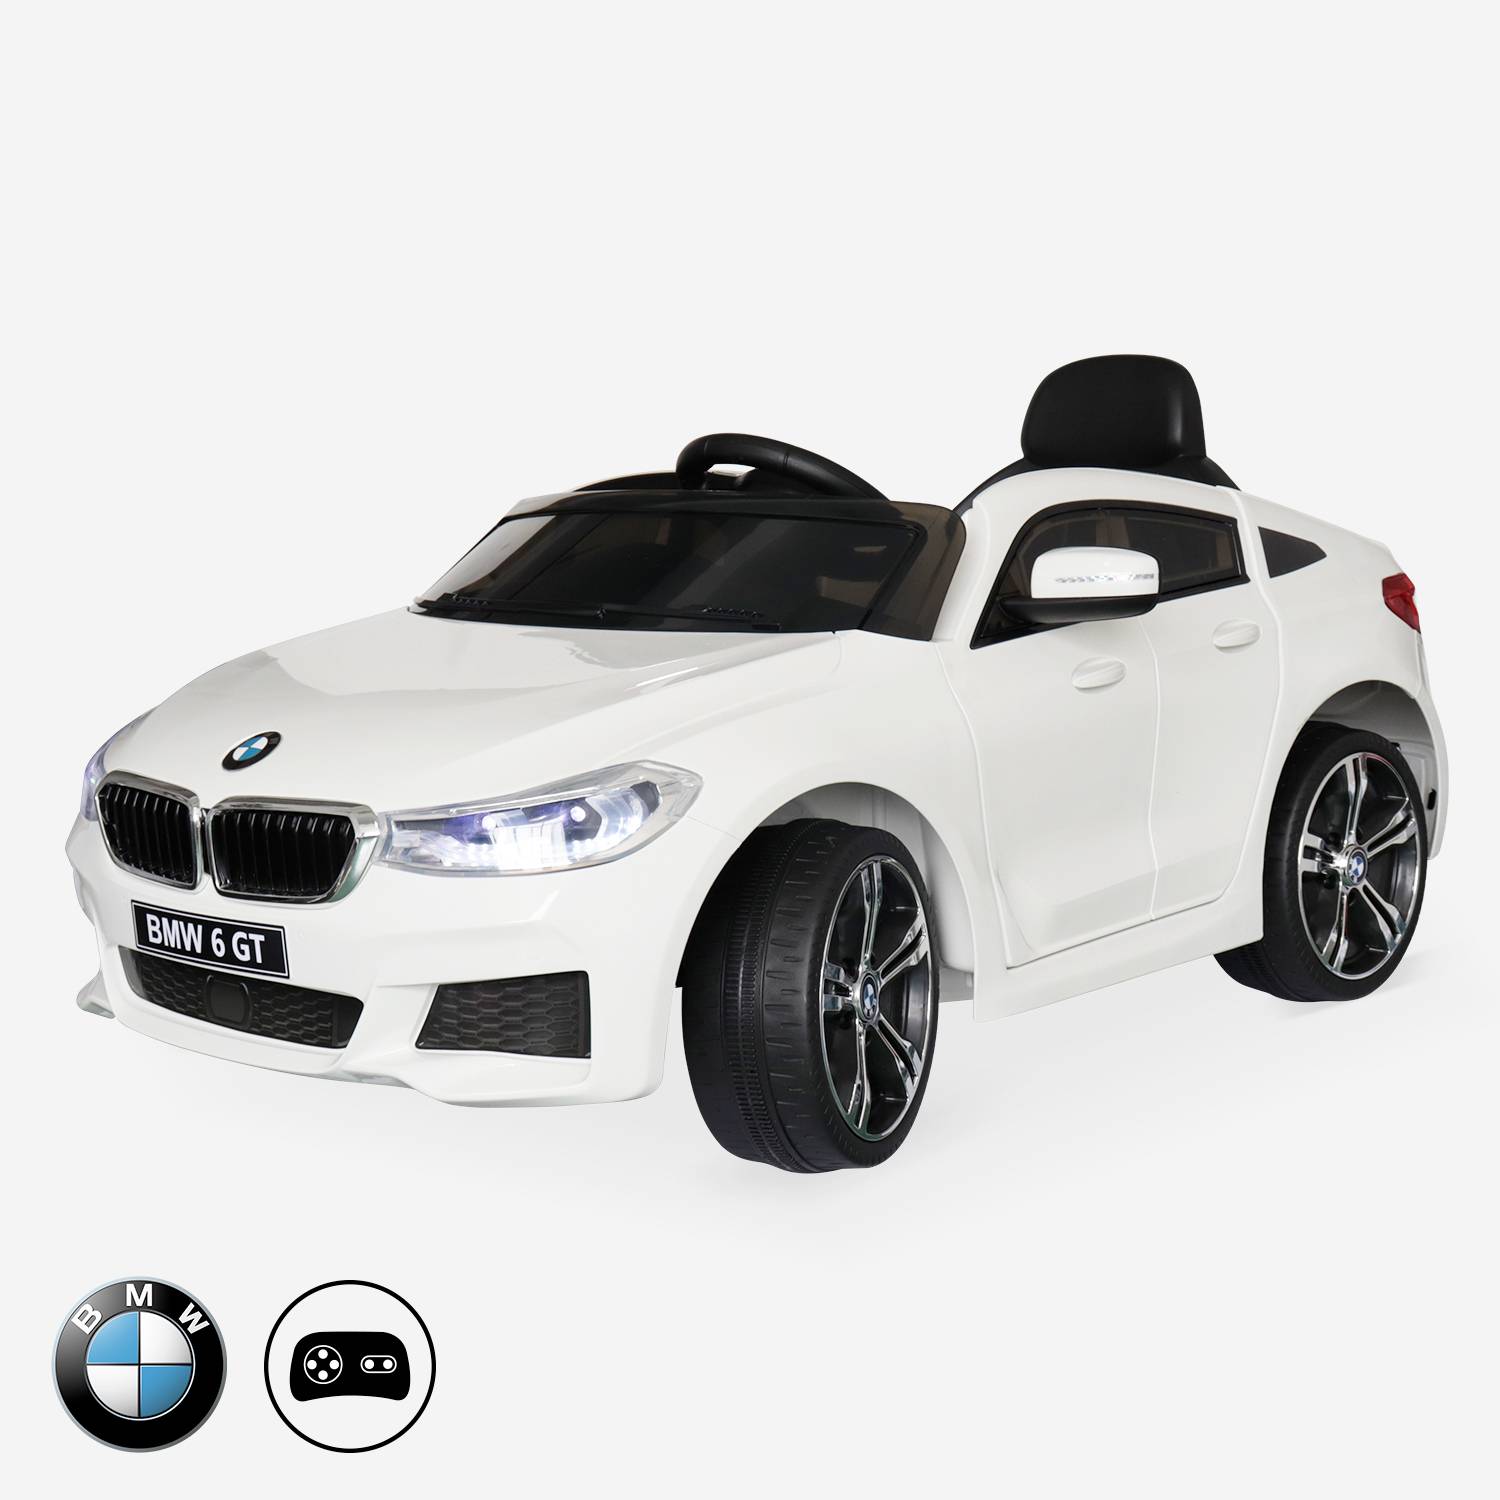 BMW Série 6 GT  blanche, voiture électrique pour enfants 12V 4 Ah, 1 place, avec autoradio et télécommande Photo1